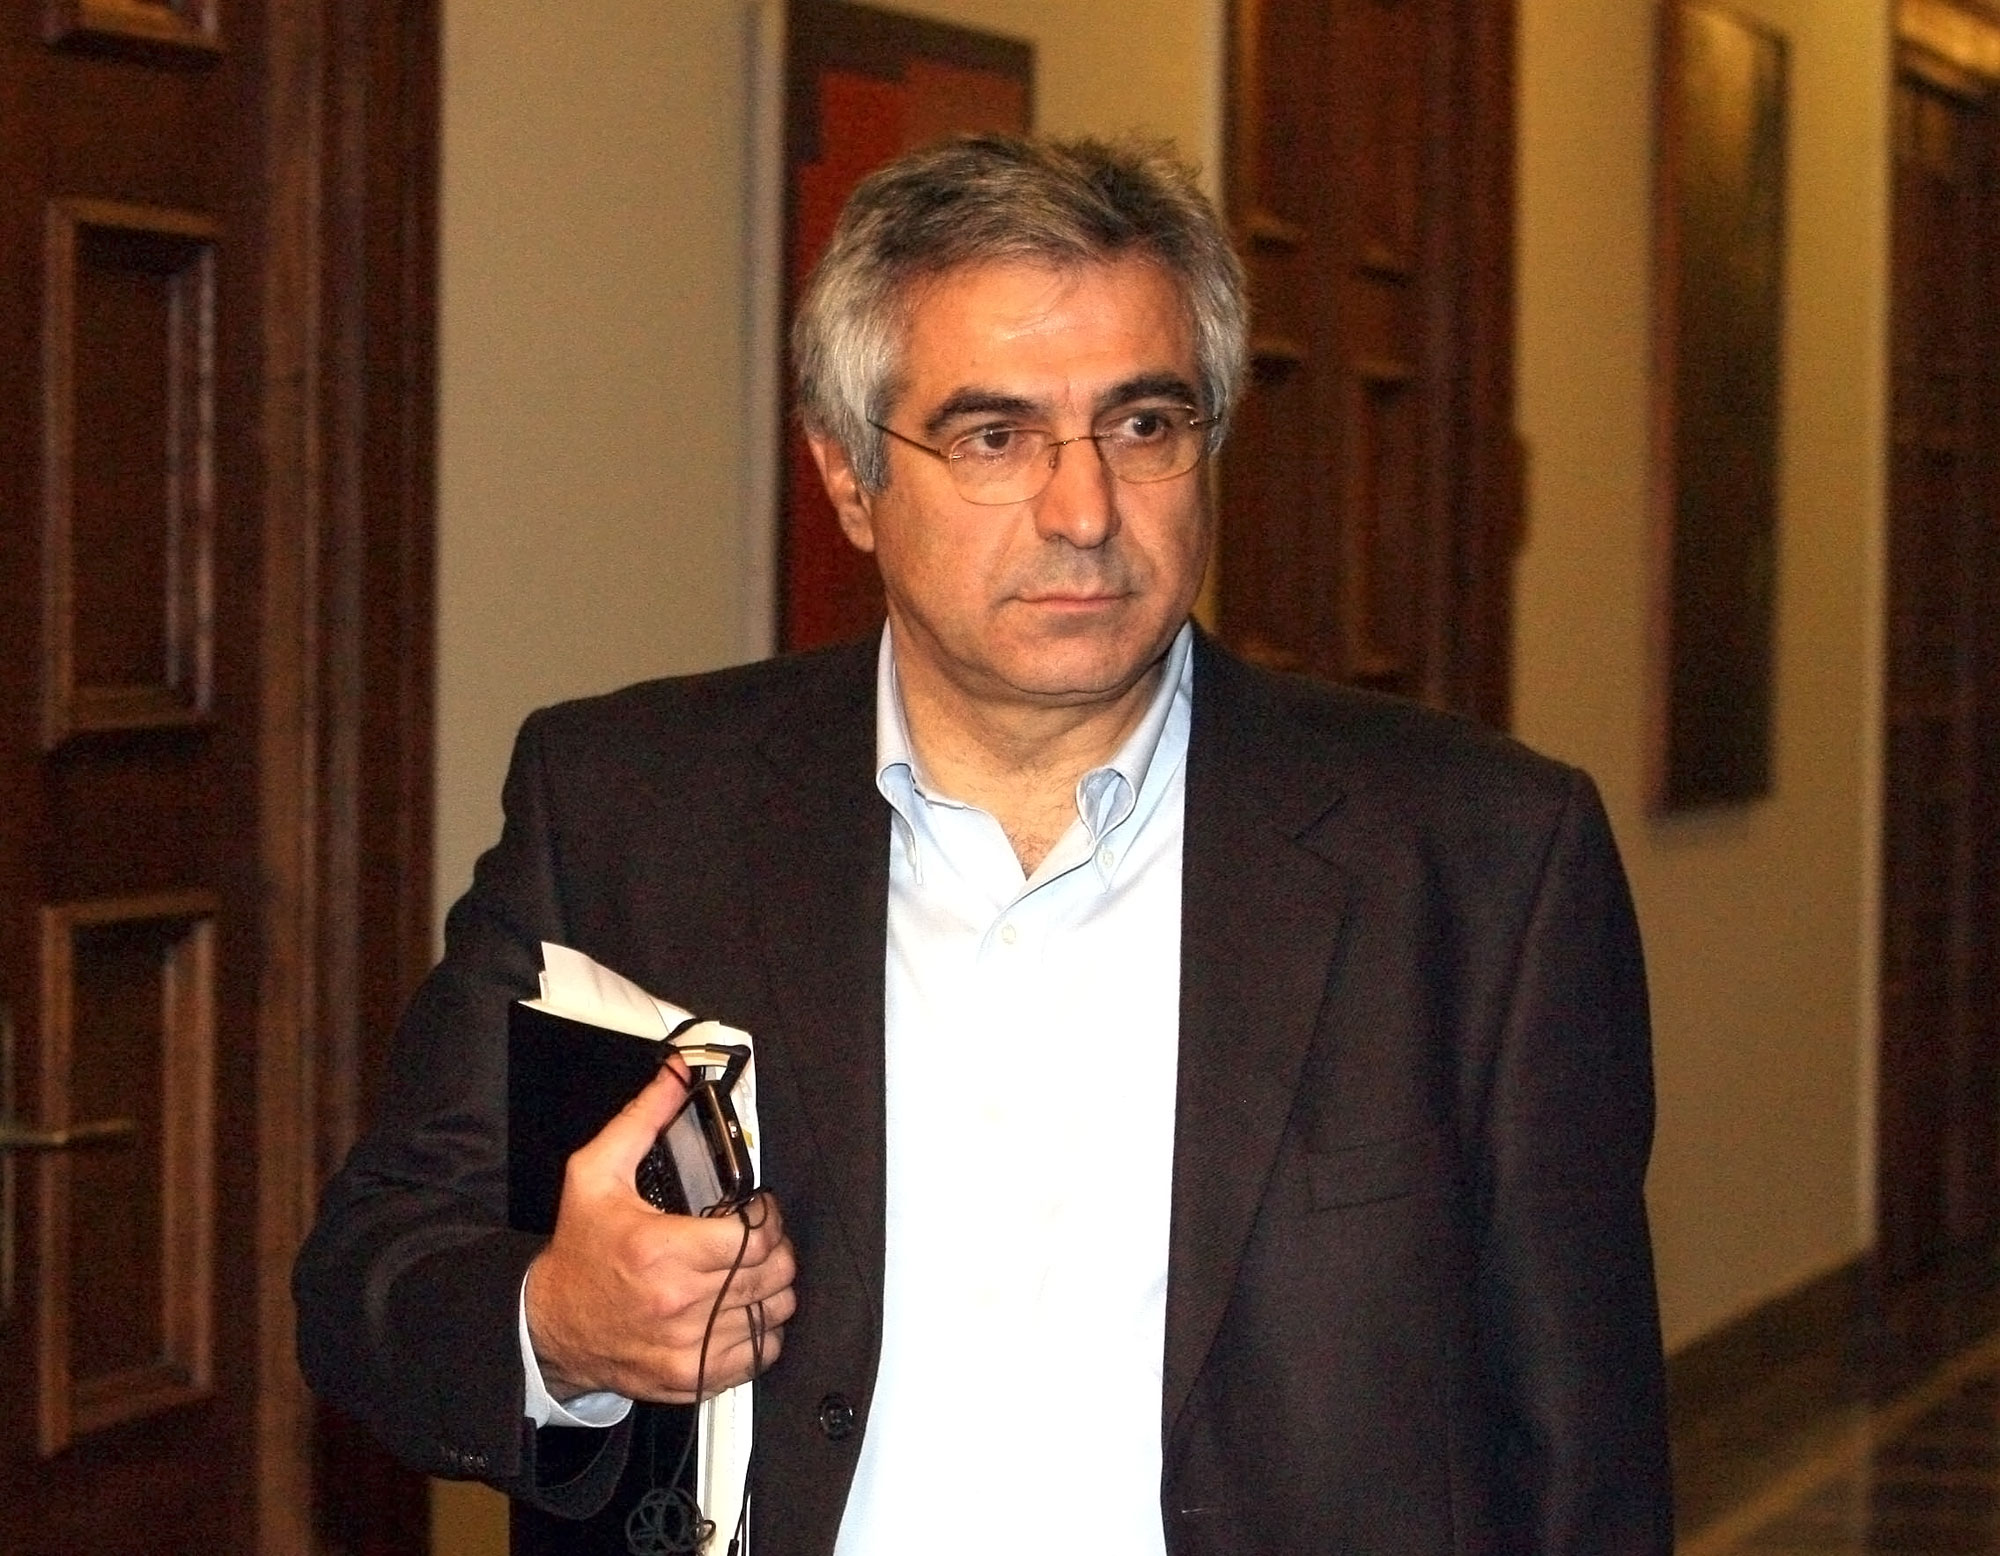 Το κόμμα Παπανδρέου μπορεί να συνεργαστεί με τον ΣΥΡΙΖΑ, λέει ο Καρχιμάκης